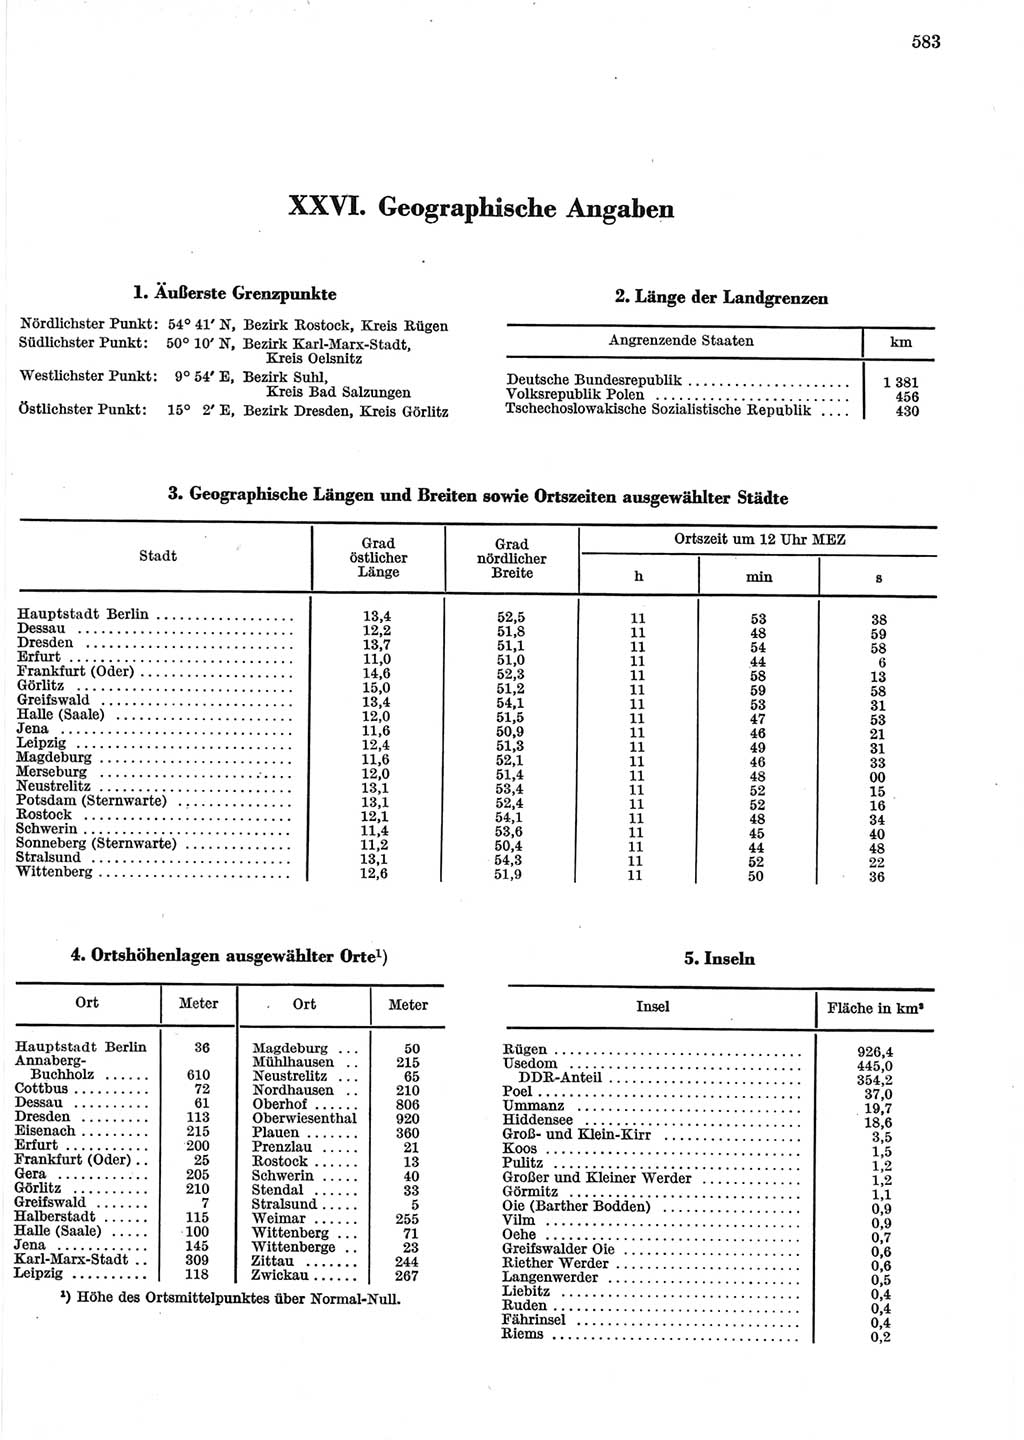 Statistisches Jahrbuch der Deutschen Demokratischen Republik (DDR) 1965, Seite 583 (Stat. Jb. DDR 1965, S. 583)